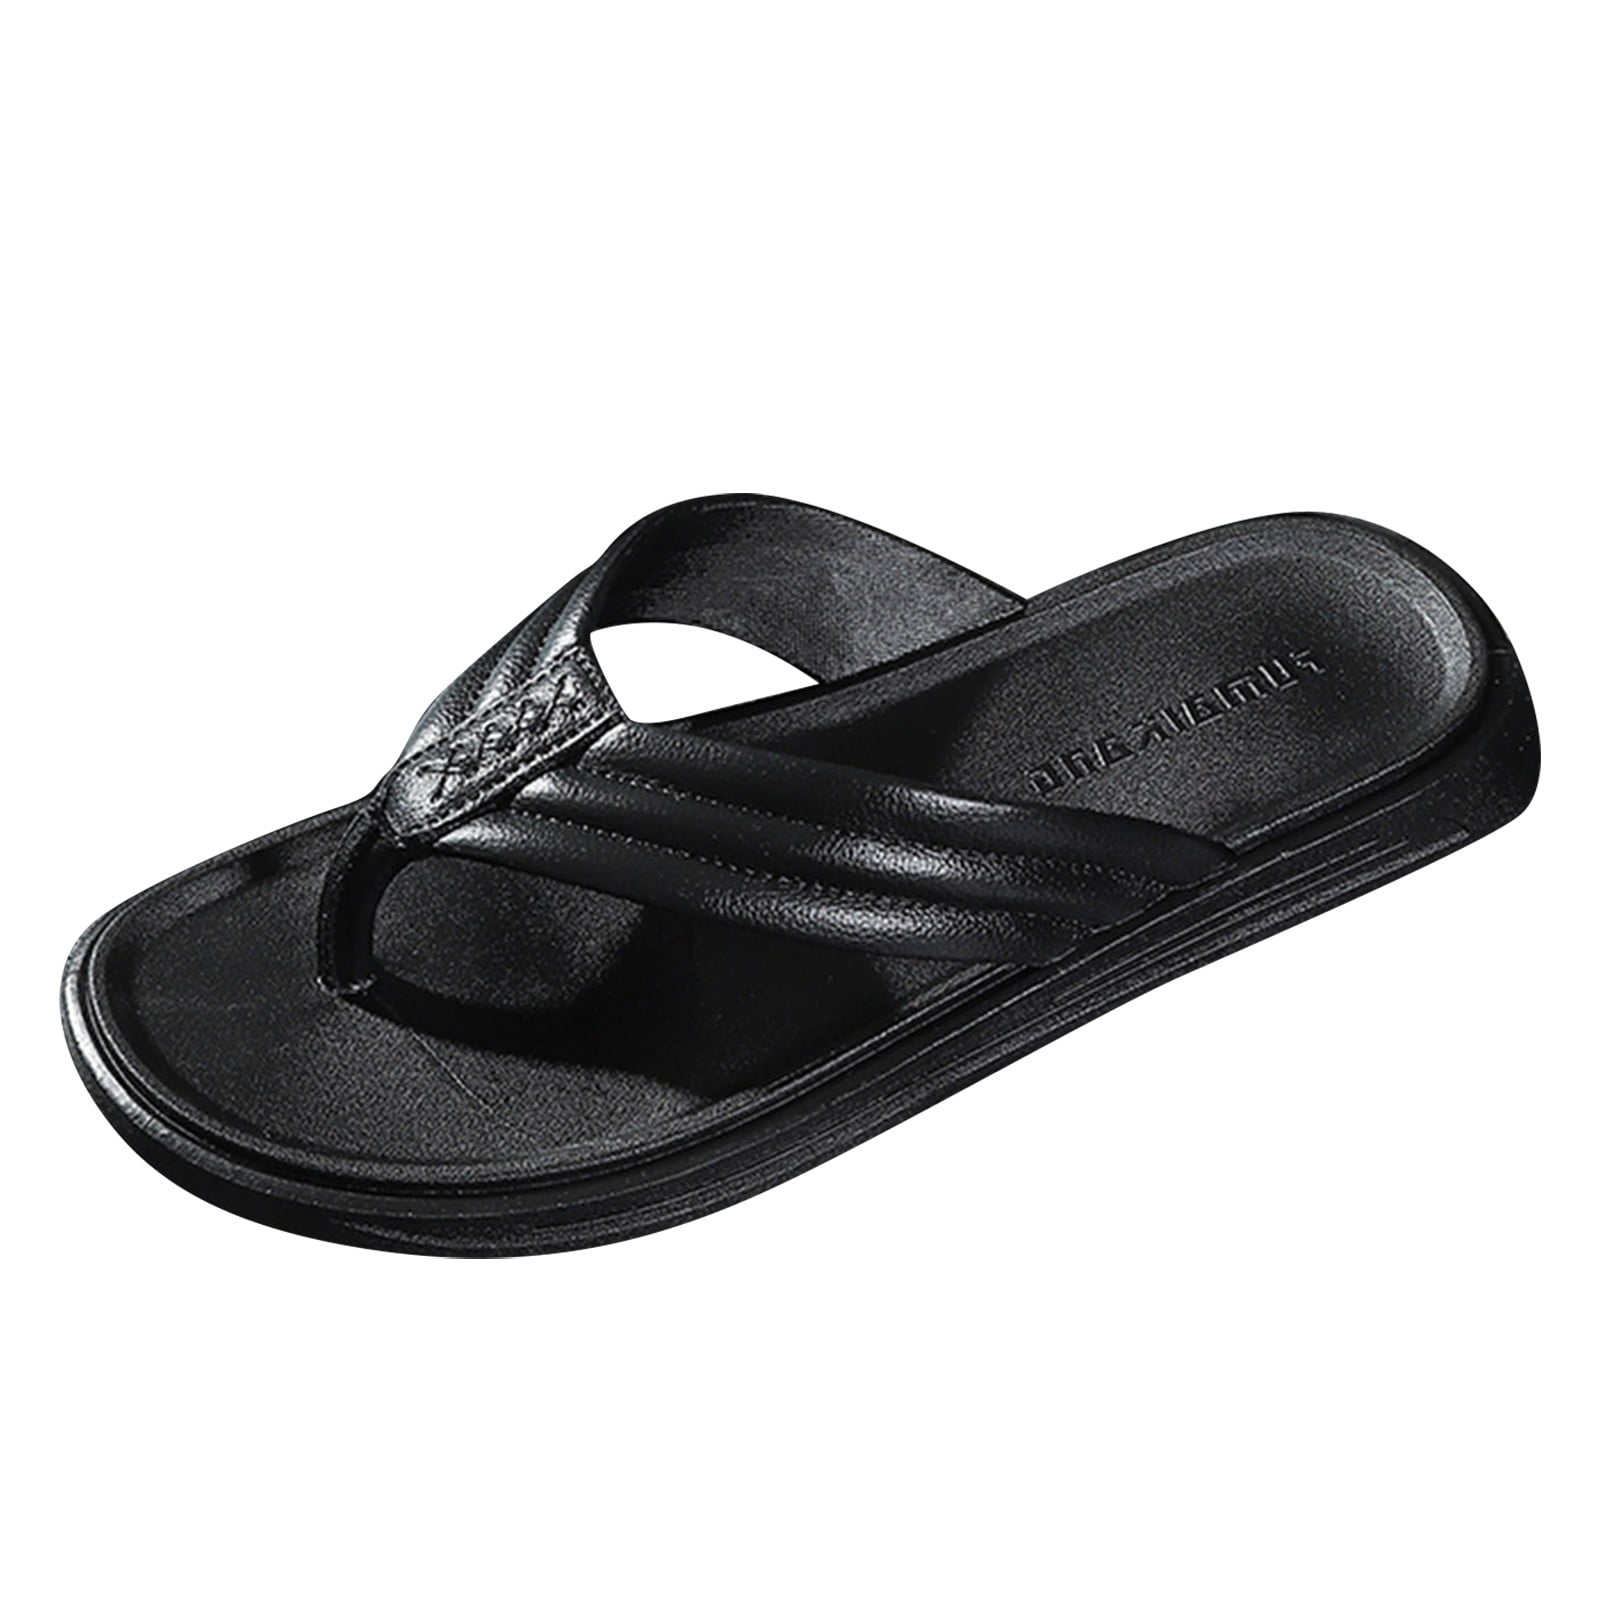 KaLI_store Shoes for Men Men's Beach Sandals, Full Grain Leather Flip-Flop  Slides, Compression Molded Footbed & Ultra-Soft Comfort Fit,Black 